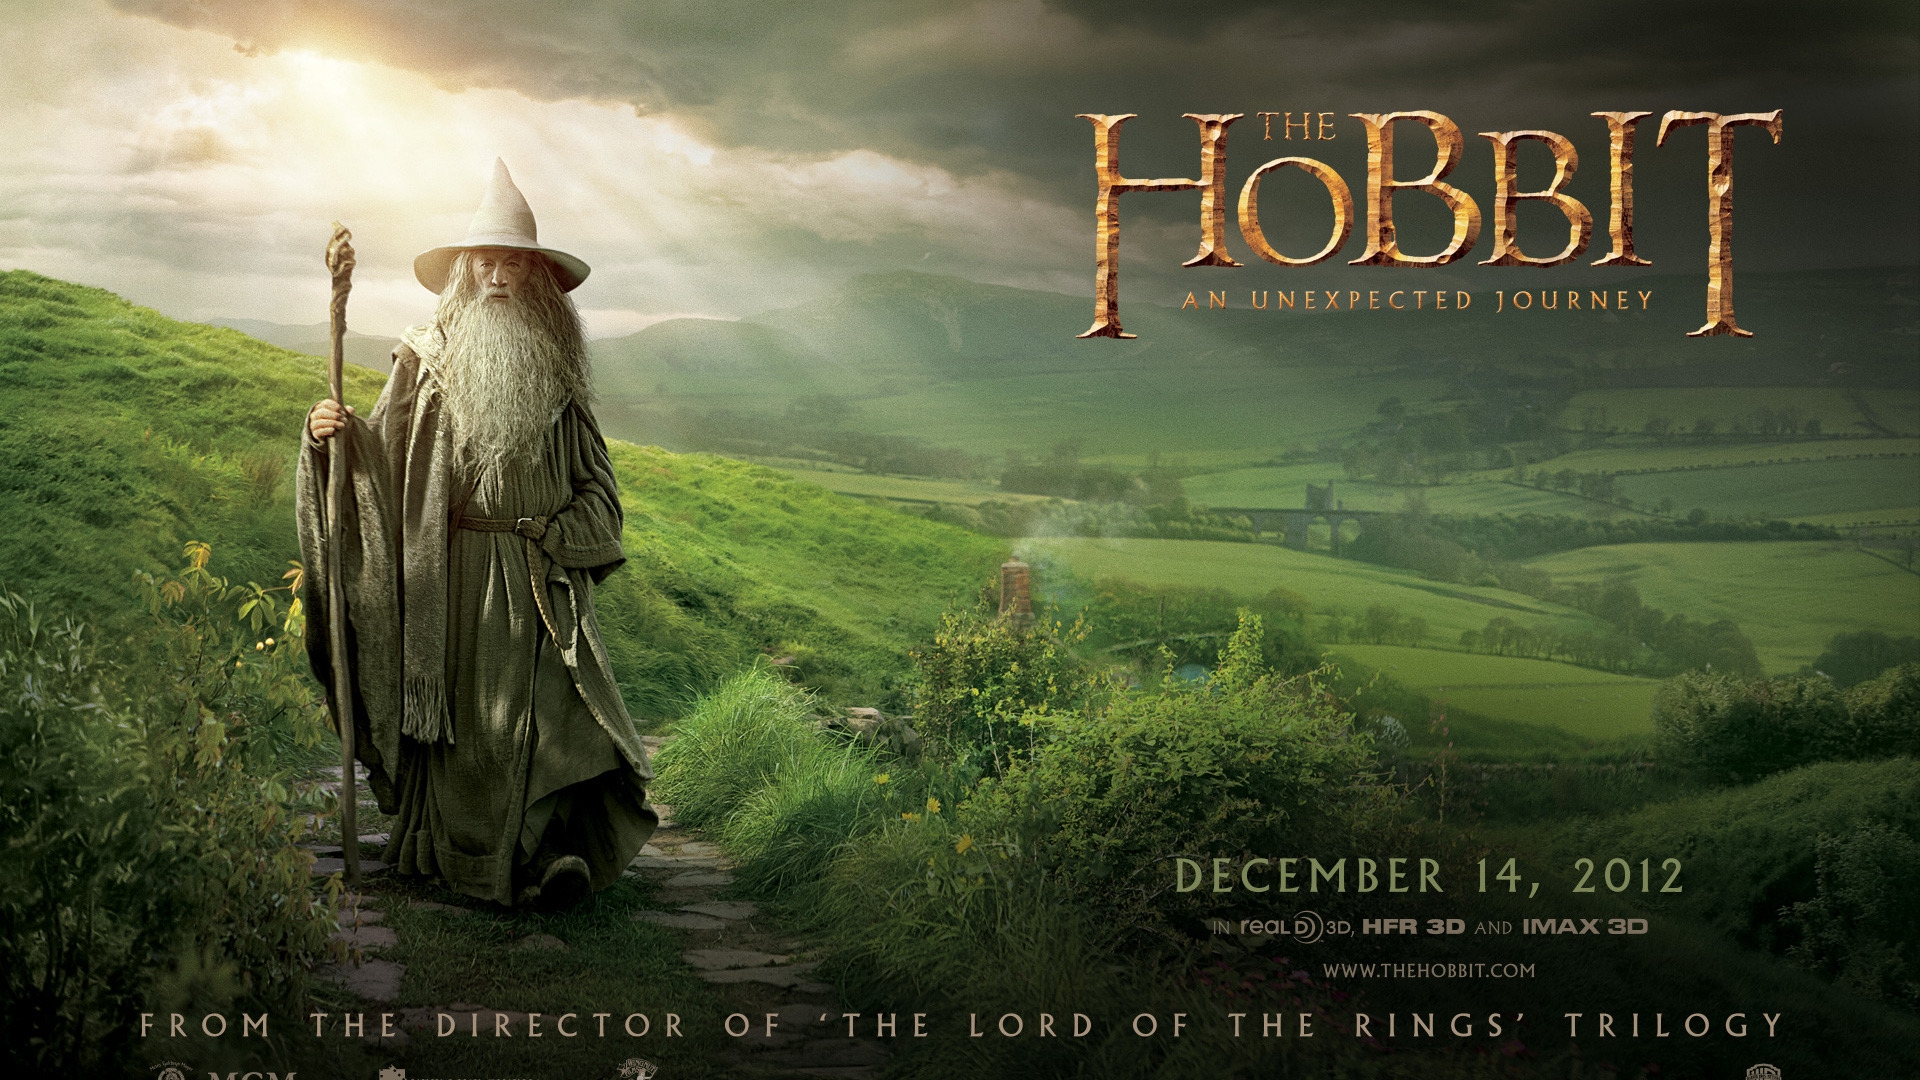 The Hobbit Gandalf for 1920 x 1080 HDTV 1080p resolution